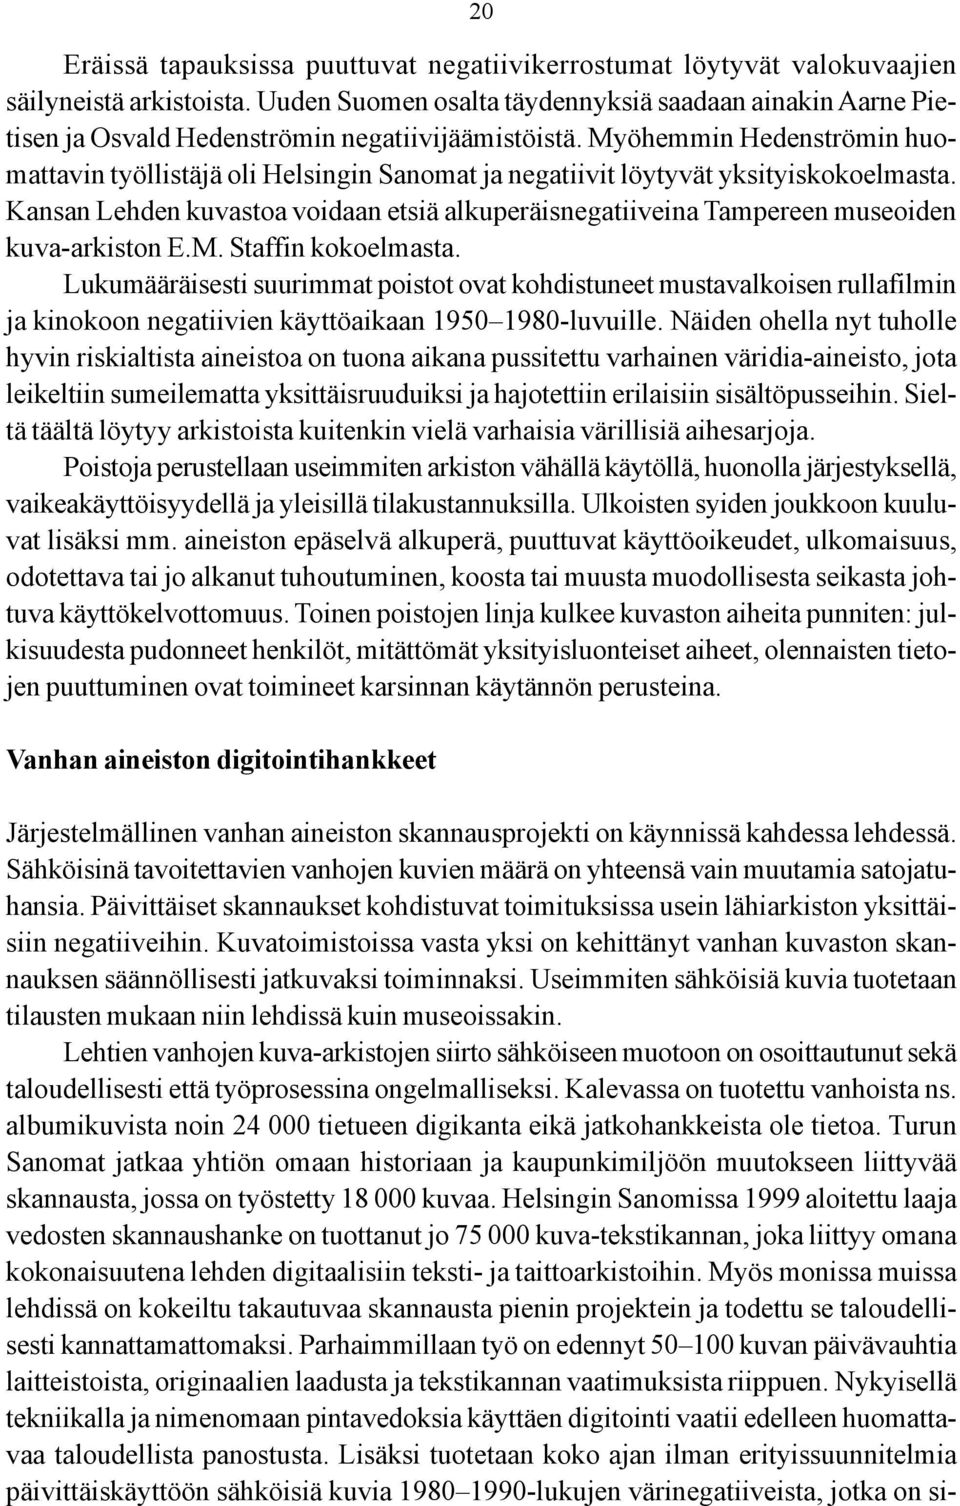 Myöhemmin Hedenströmin huomattavin työllistäjä oli Helsingin Sanomat ja negatiivit löytyvät yksityiskokoelmasta.